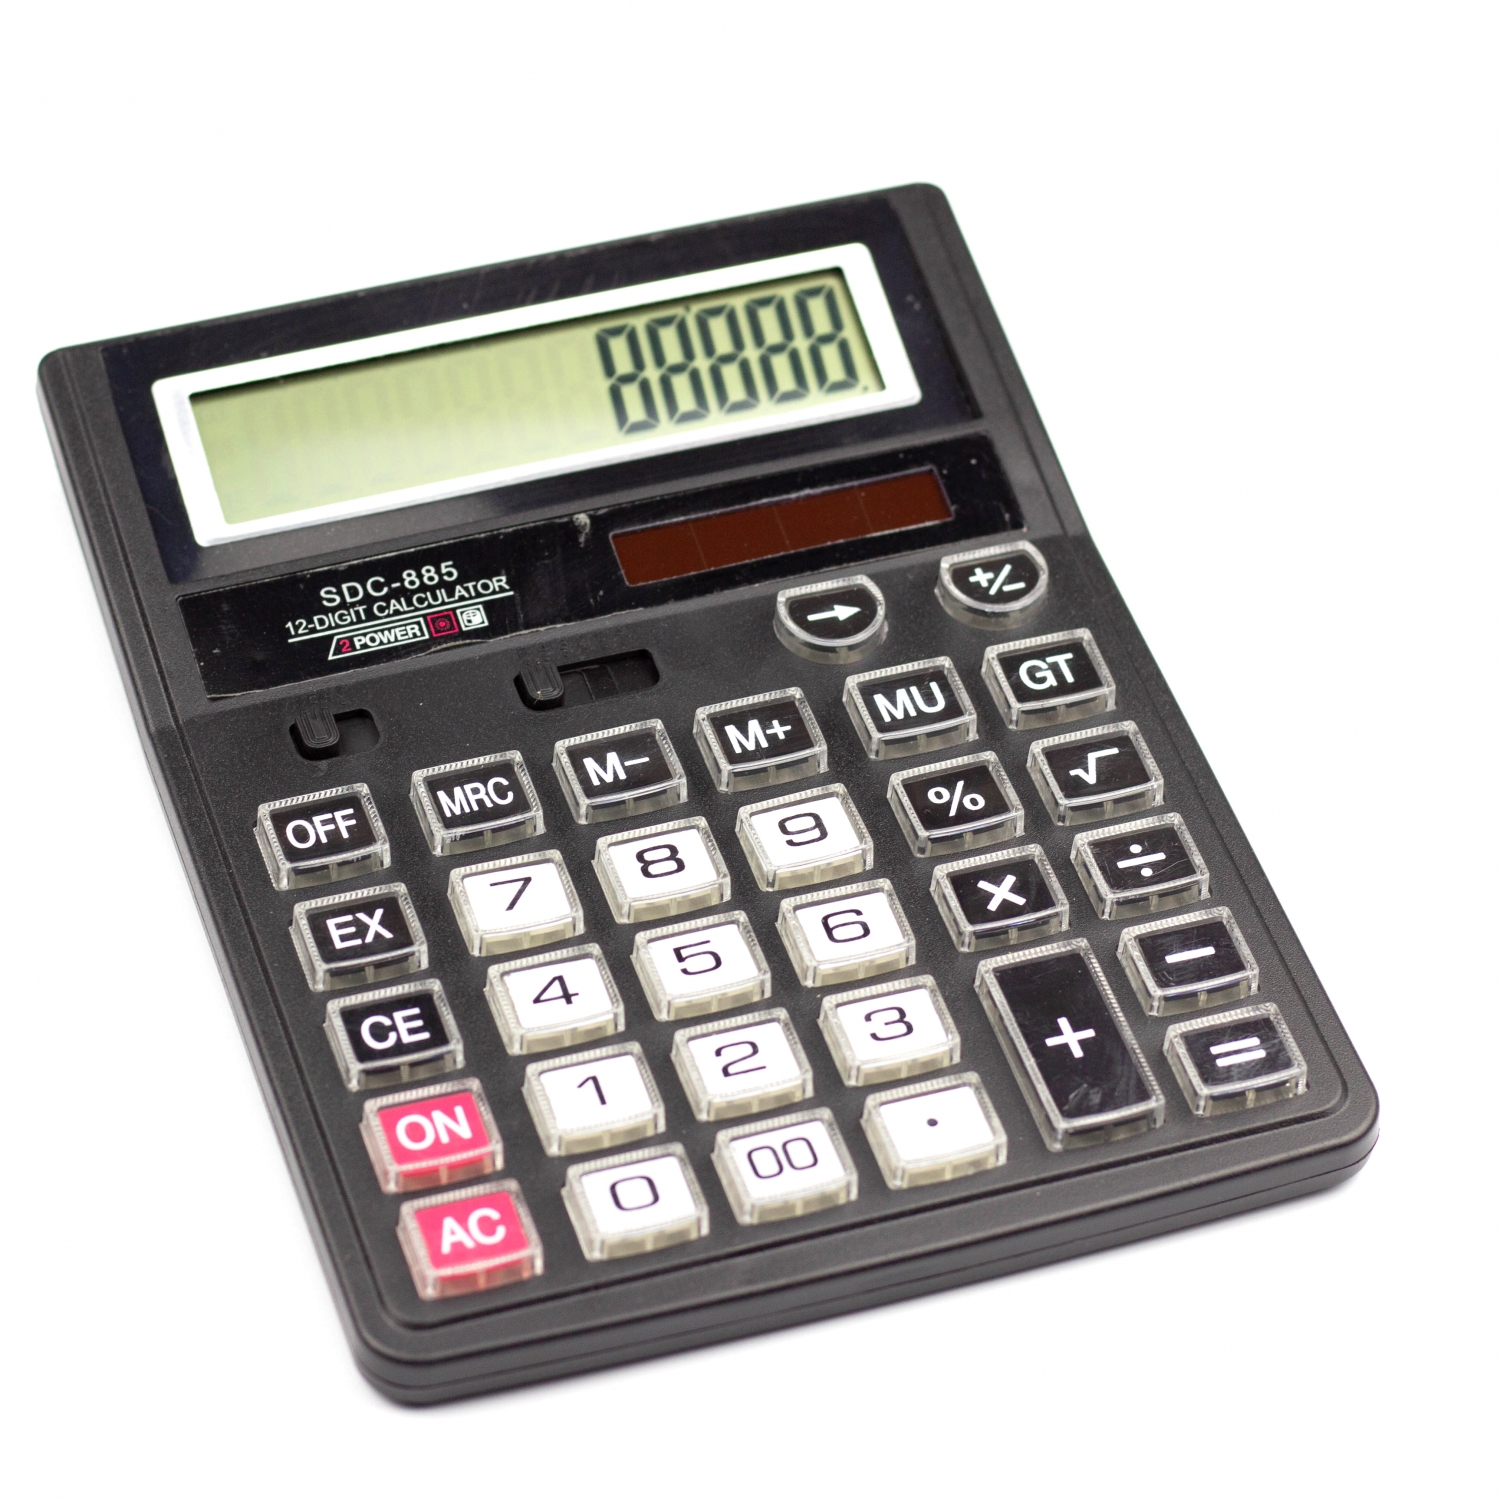 Калькулятор SDC-885 в коробке 12 разрядный AL6350 - Москва 